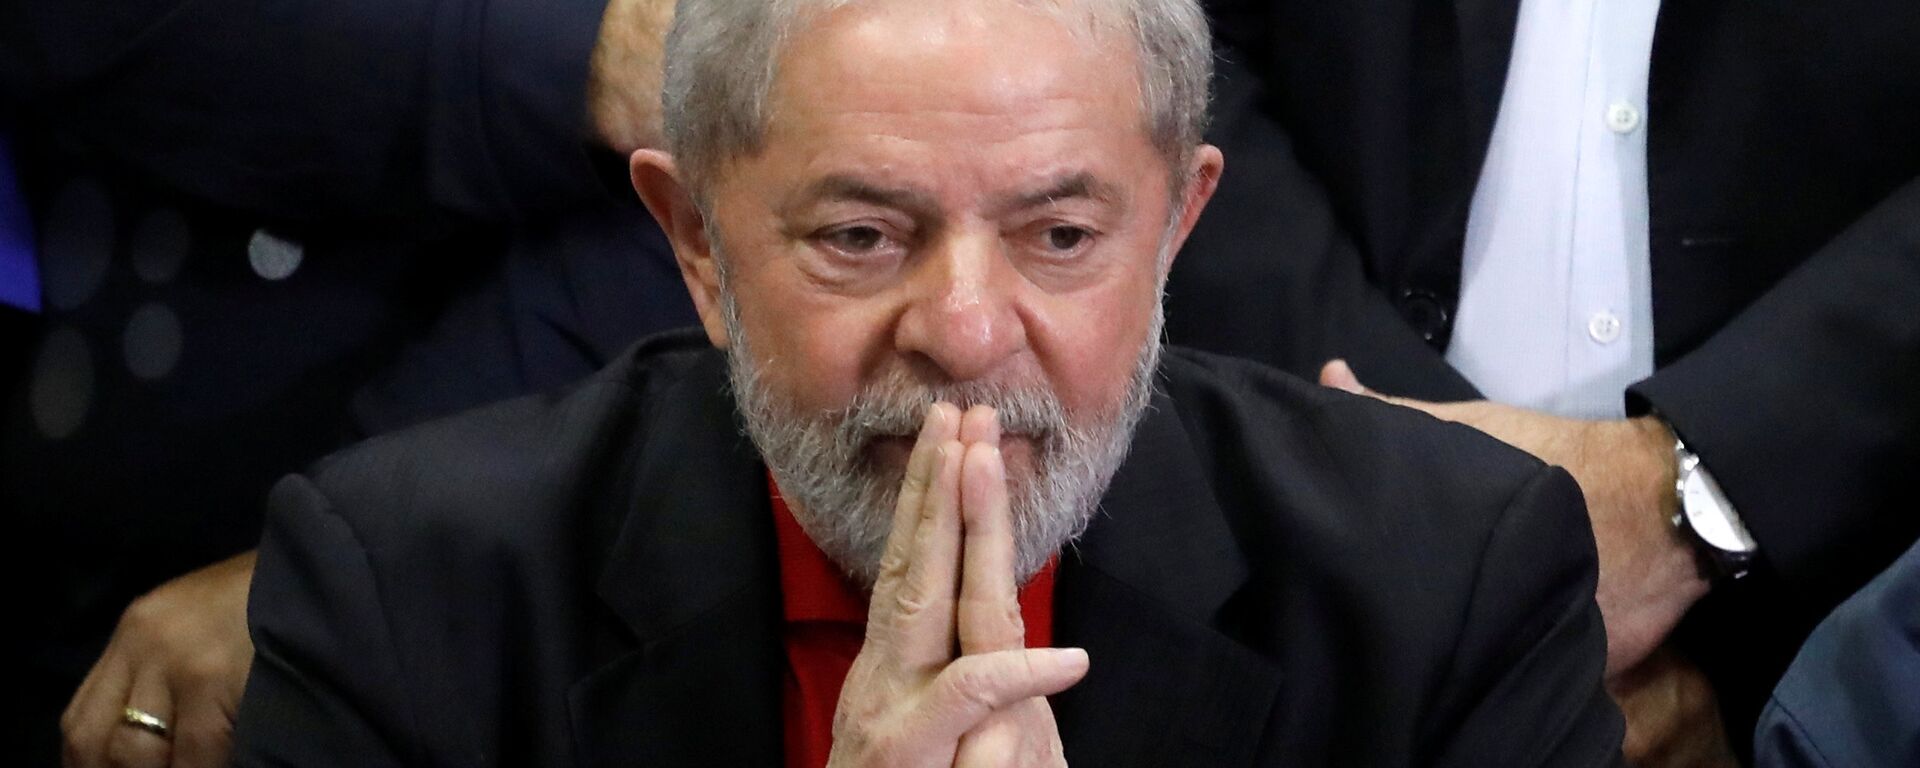 Luiz Inácio Lula da Silva, expresidente brasileño - Sputnik Mundo, 1920, 18.02.2021